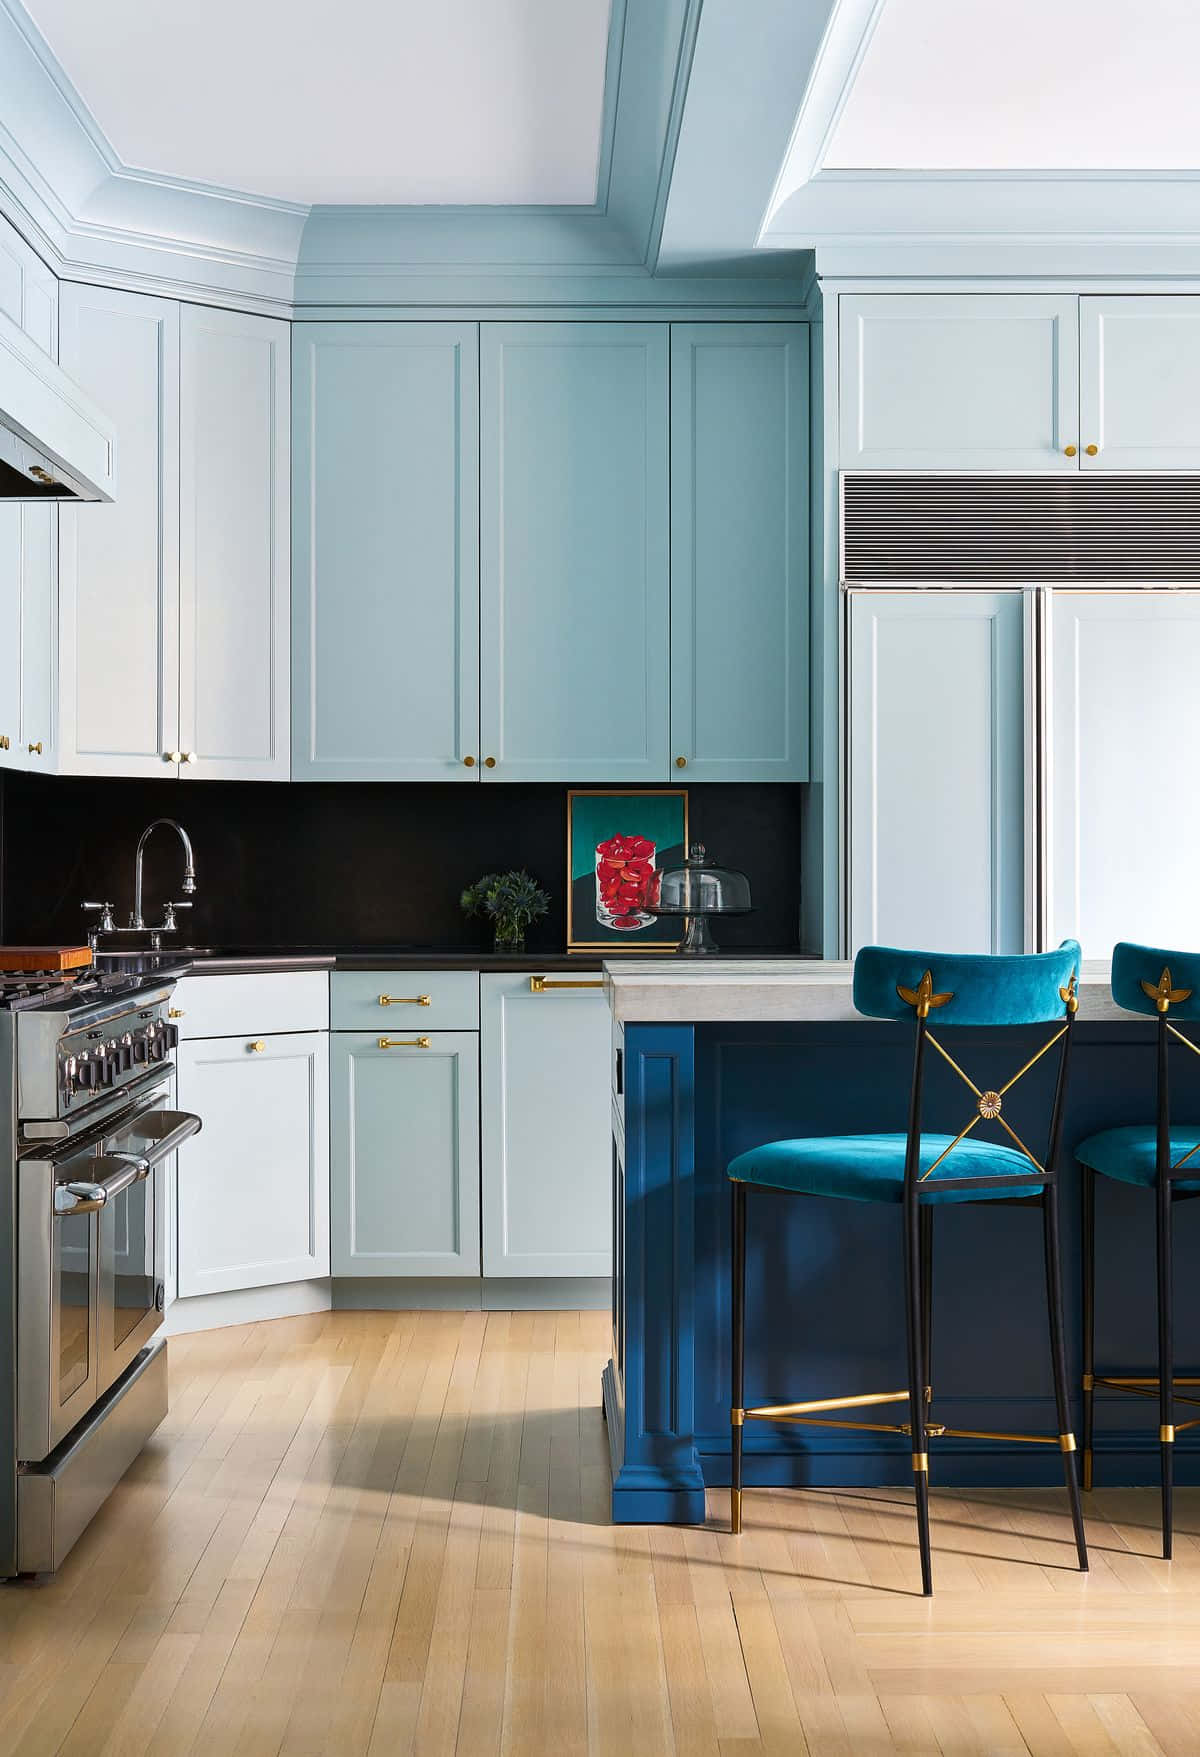 Blauestühle - Der Beste Hintergrund Für Die Küche.